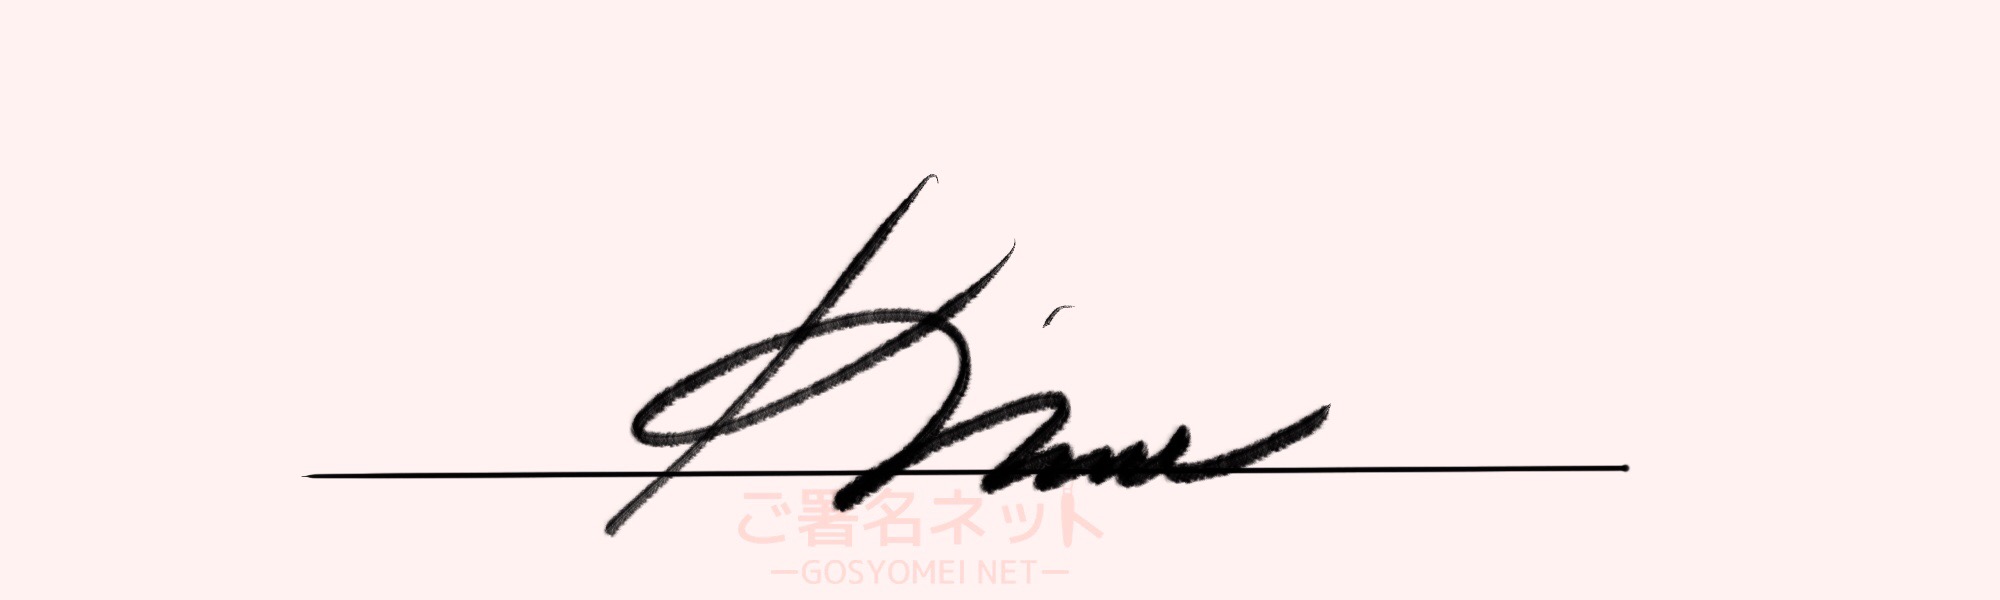 サインの作り方 イニシャルkの書き方 ご署名ネット